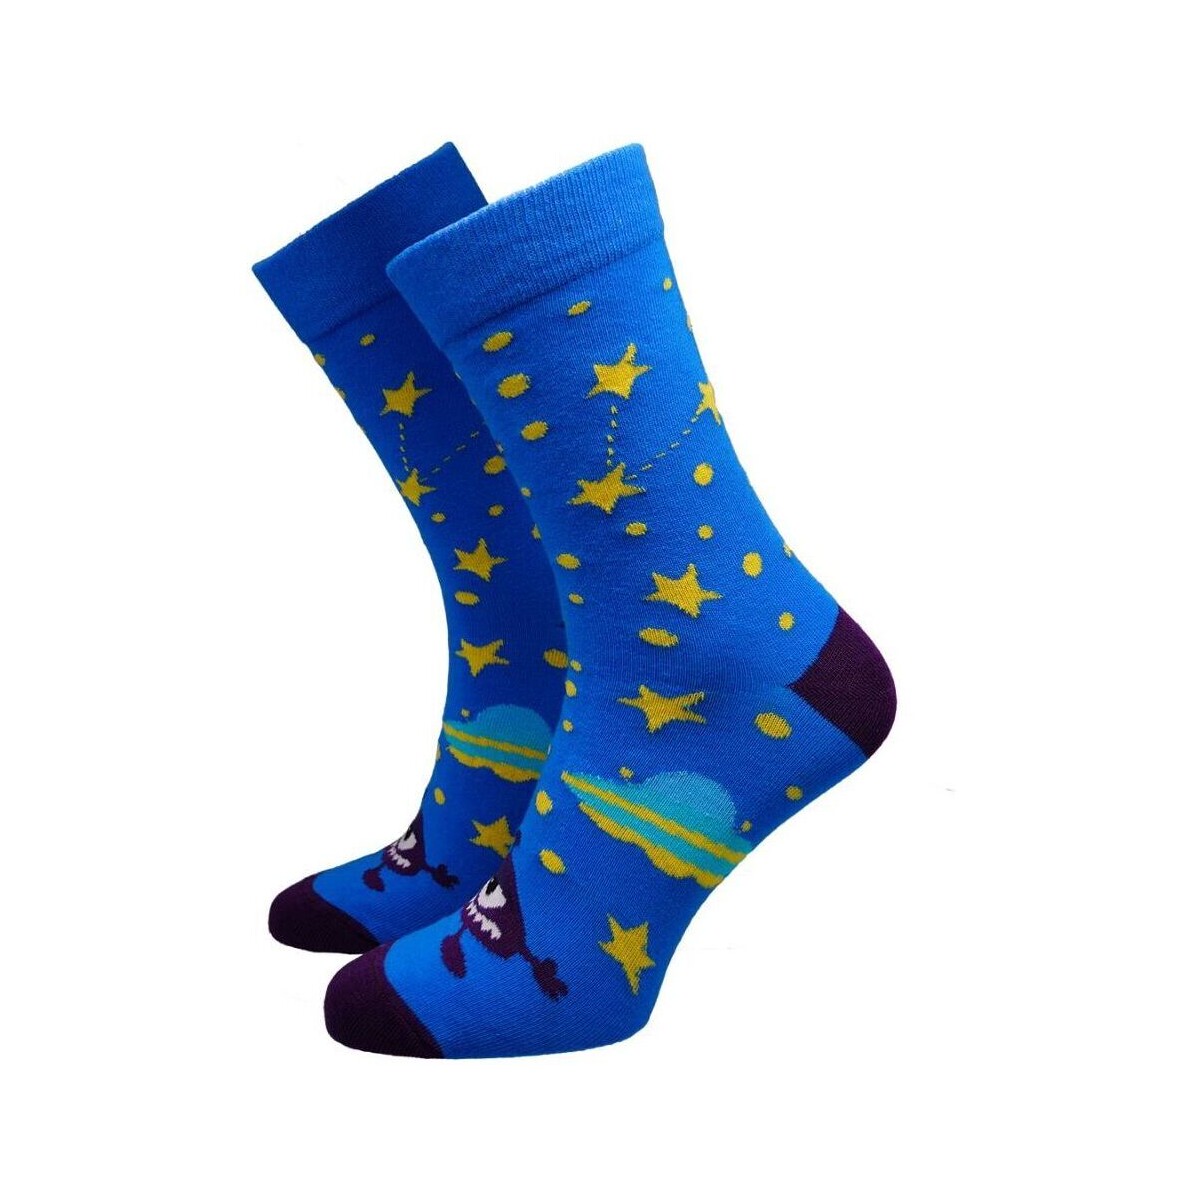 Doplňky  Doplňky k obuvi Hesty Socks unisex ponožky Ufo tmavě modré Tmavě modrá